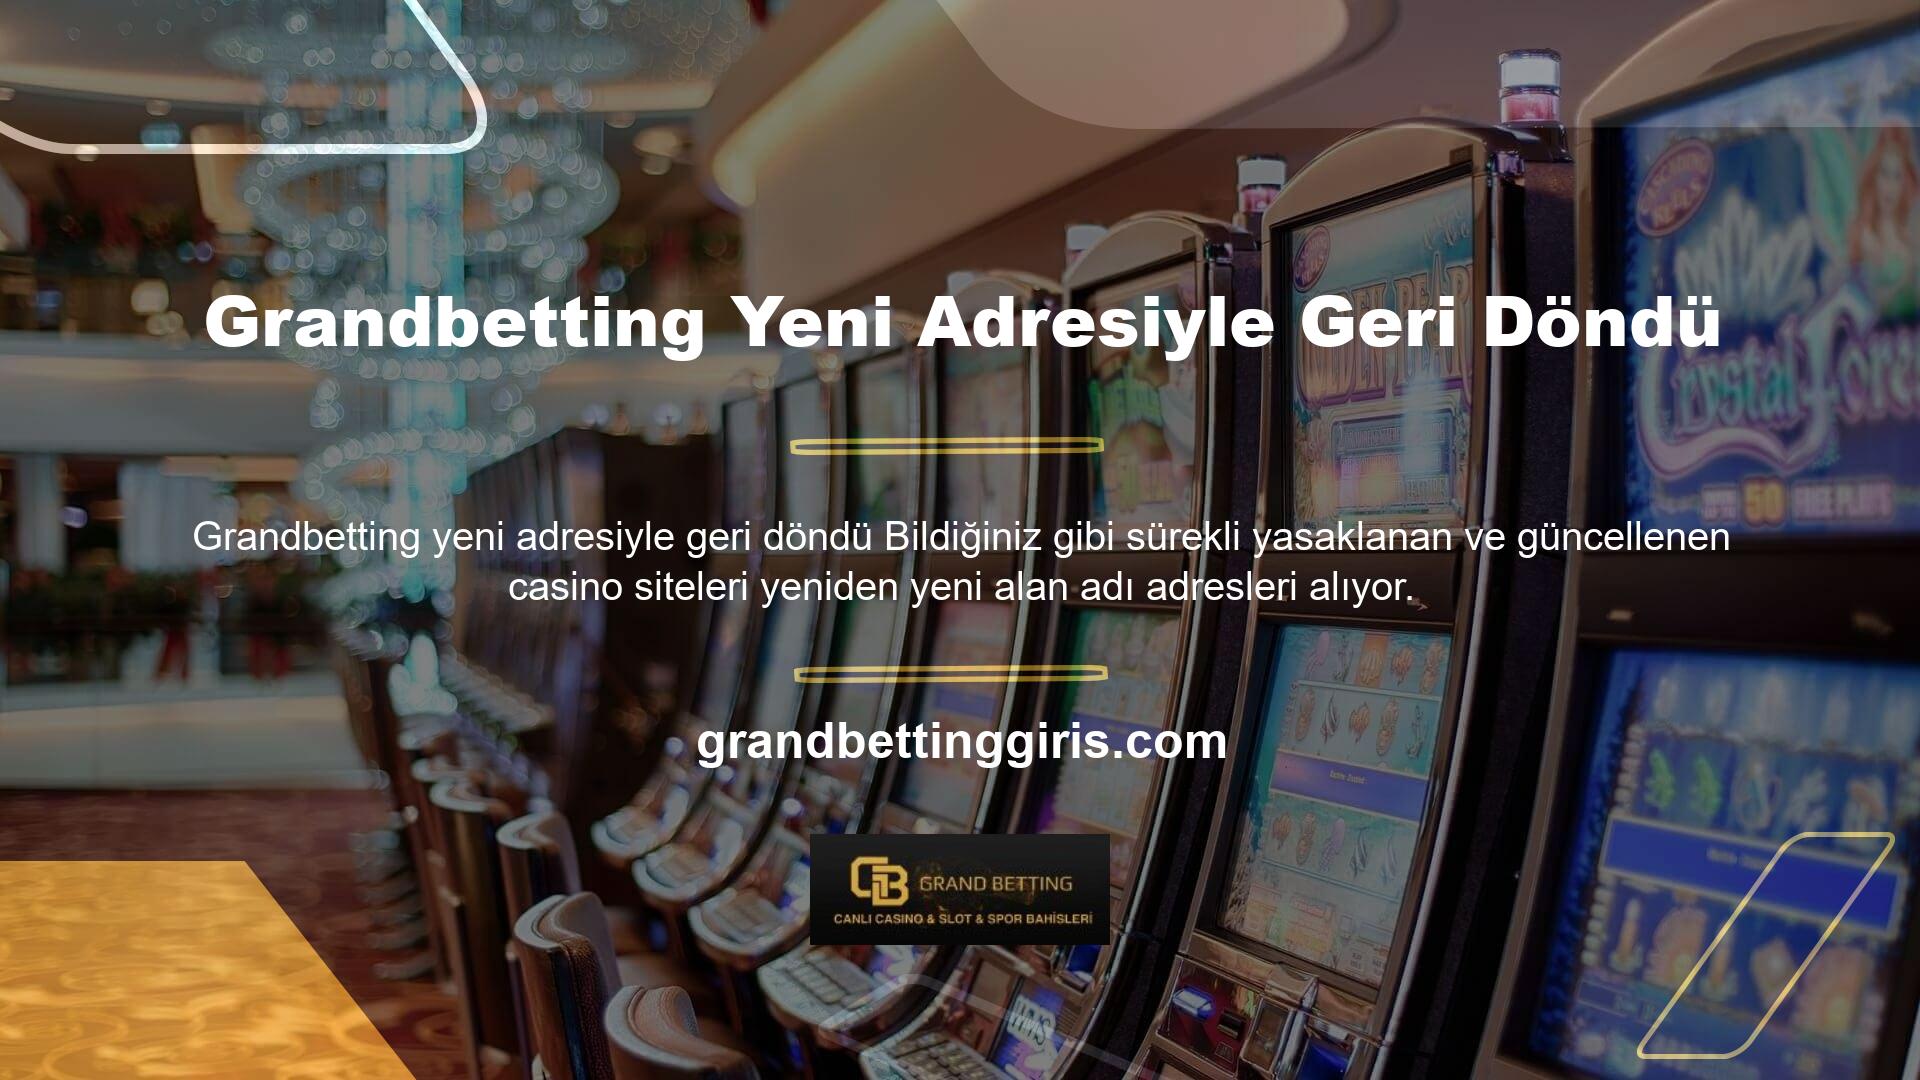 Grandbetting, Avrupa'da yasal olarak faaliyet gösteren bir casino şirketidir, ancak Türkiye'de yasa dışıdır